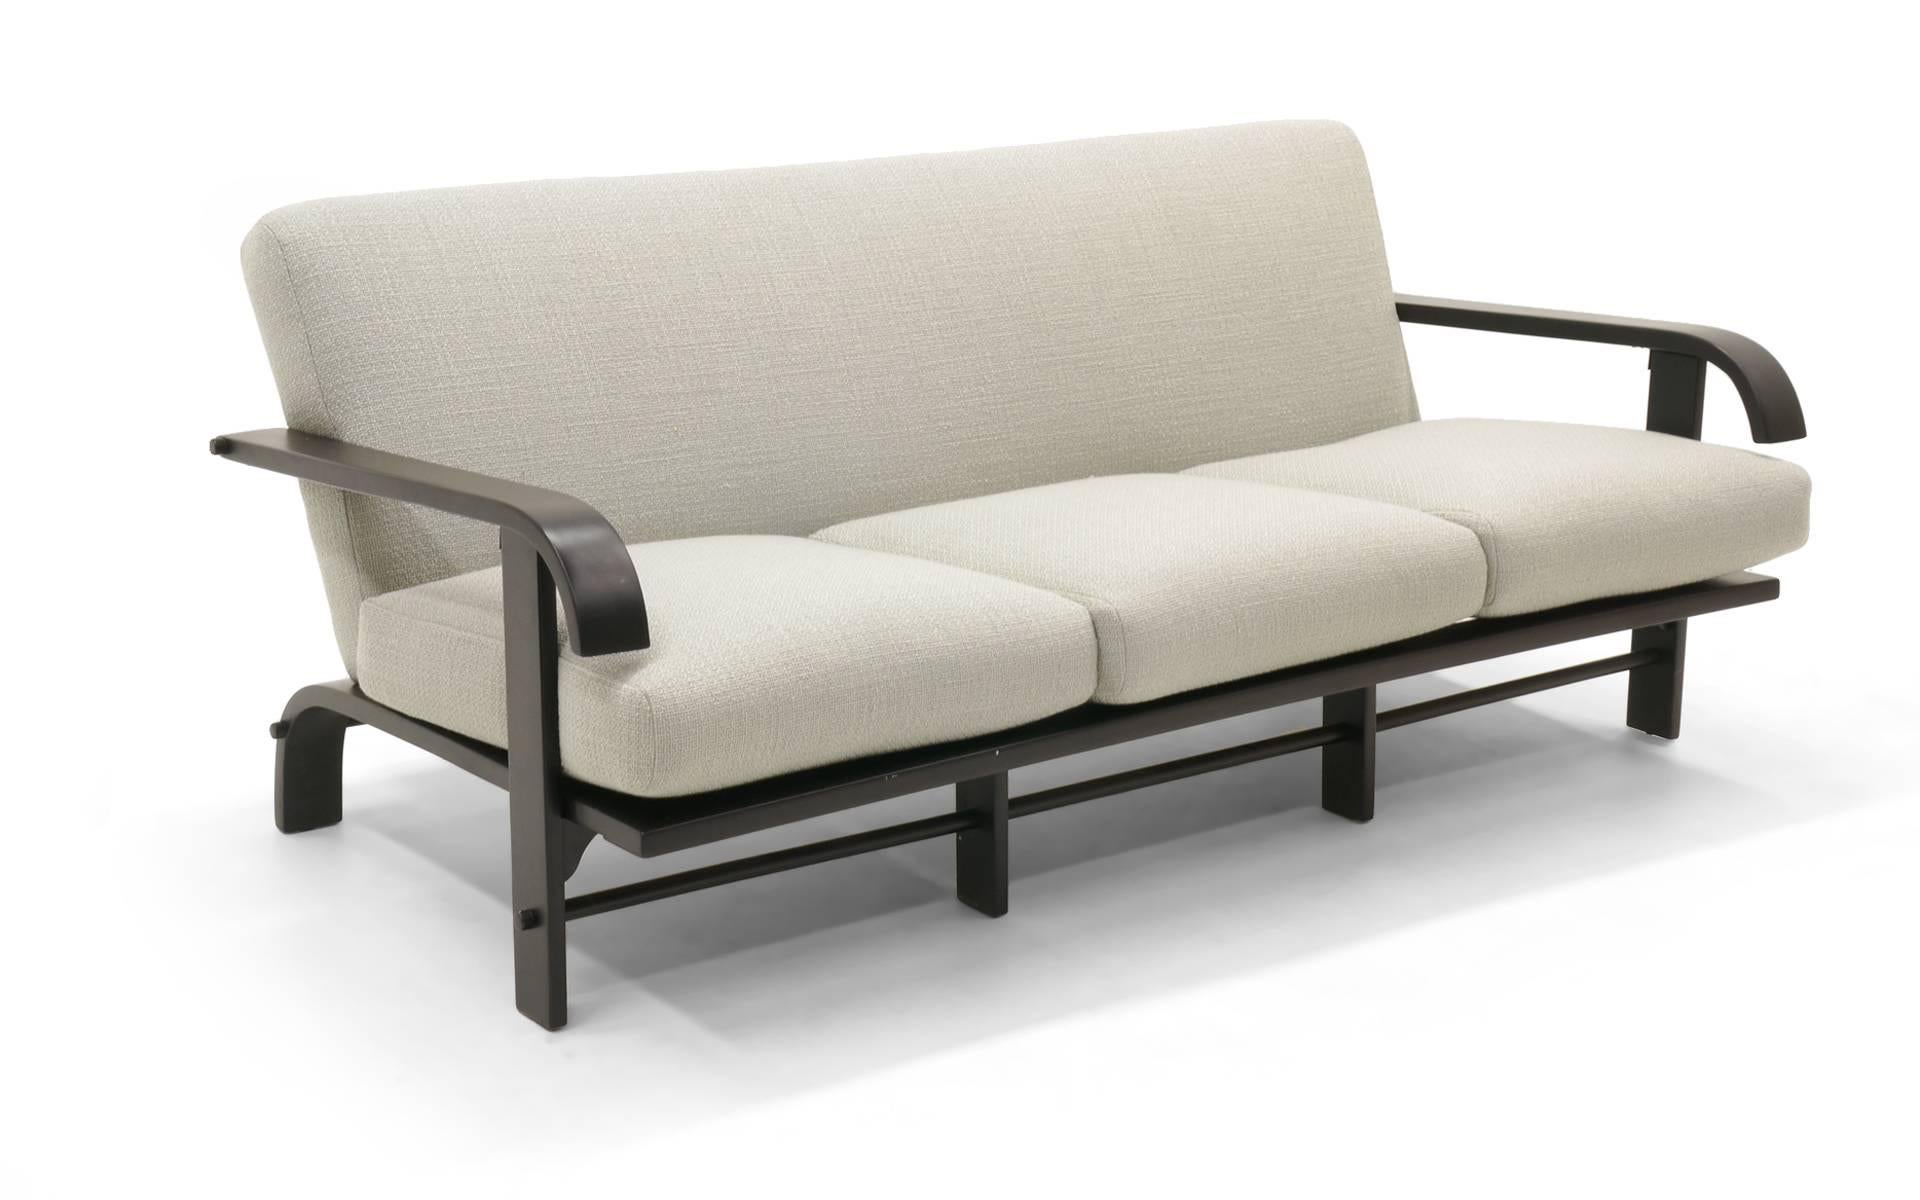 Russel Wright für Conant Ball Sofa. Schwarz lackierter Holzrahmen und neu gepolstert mit einem schönen hellgrauen oder silbernen Stoff.